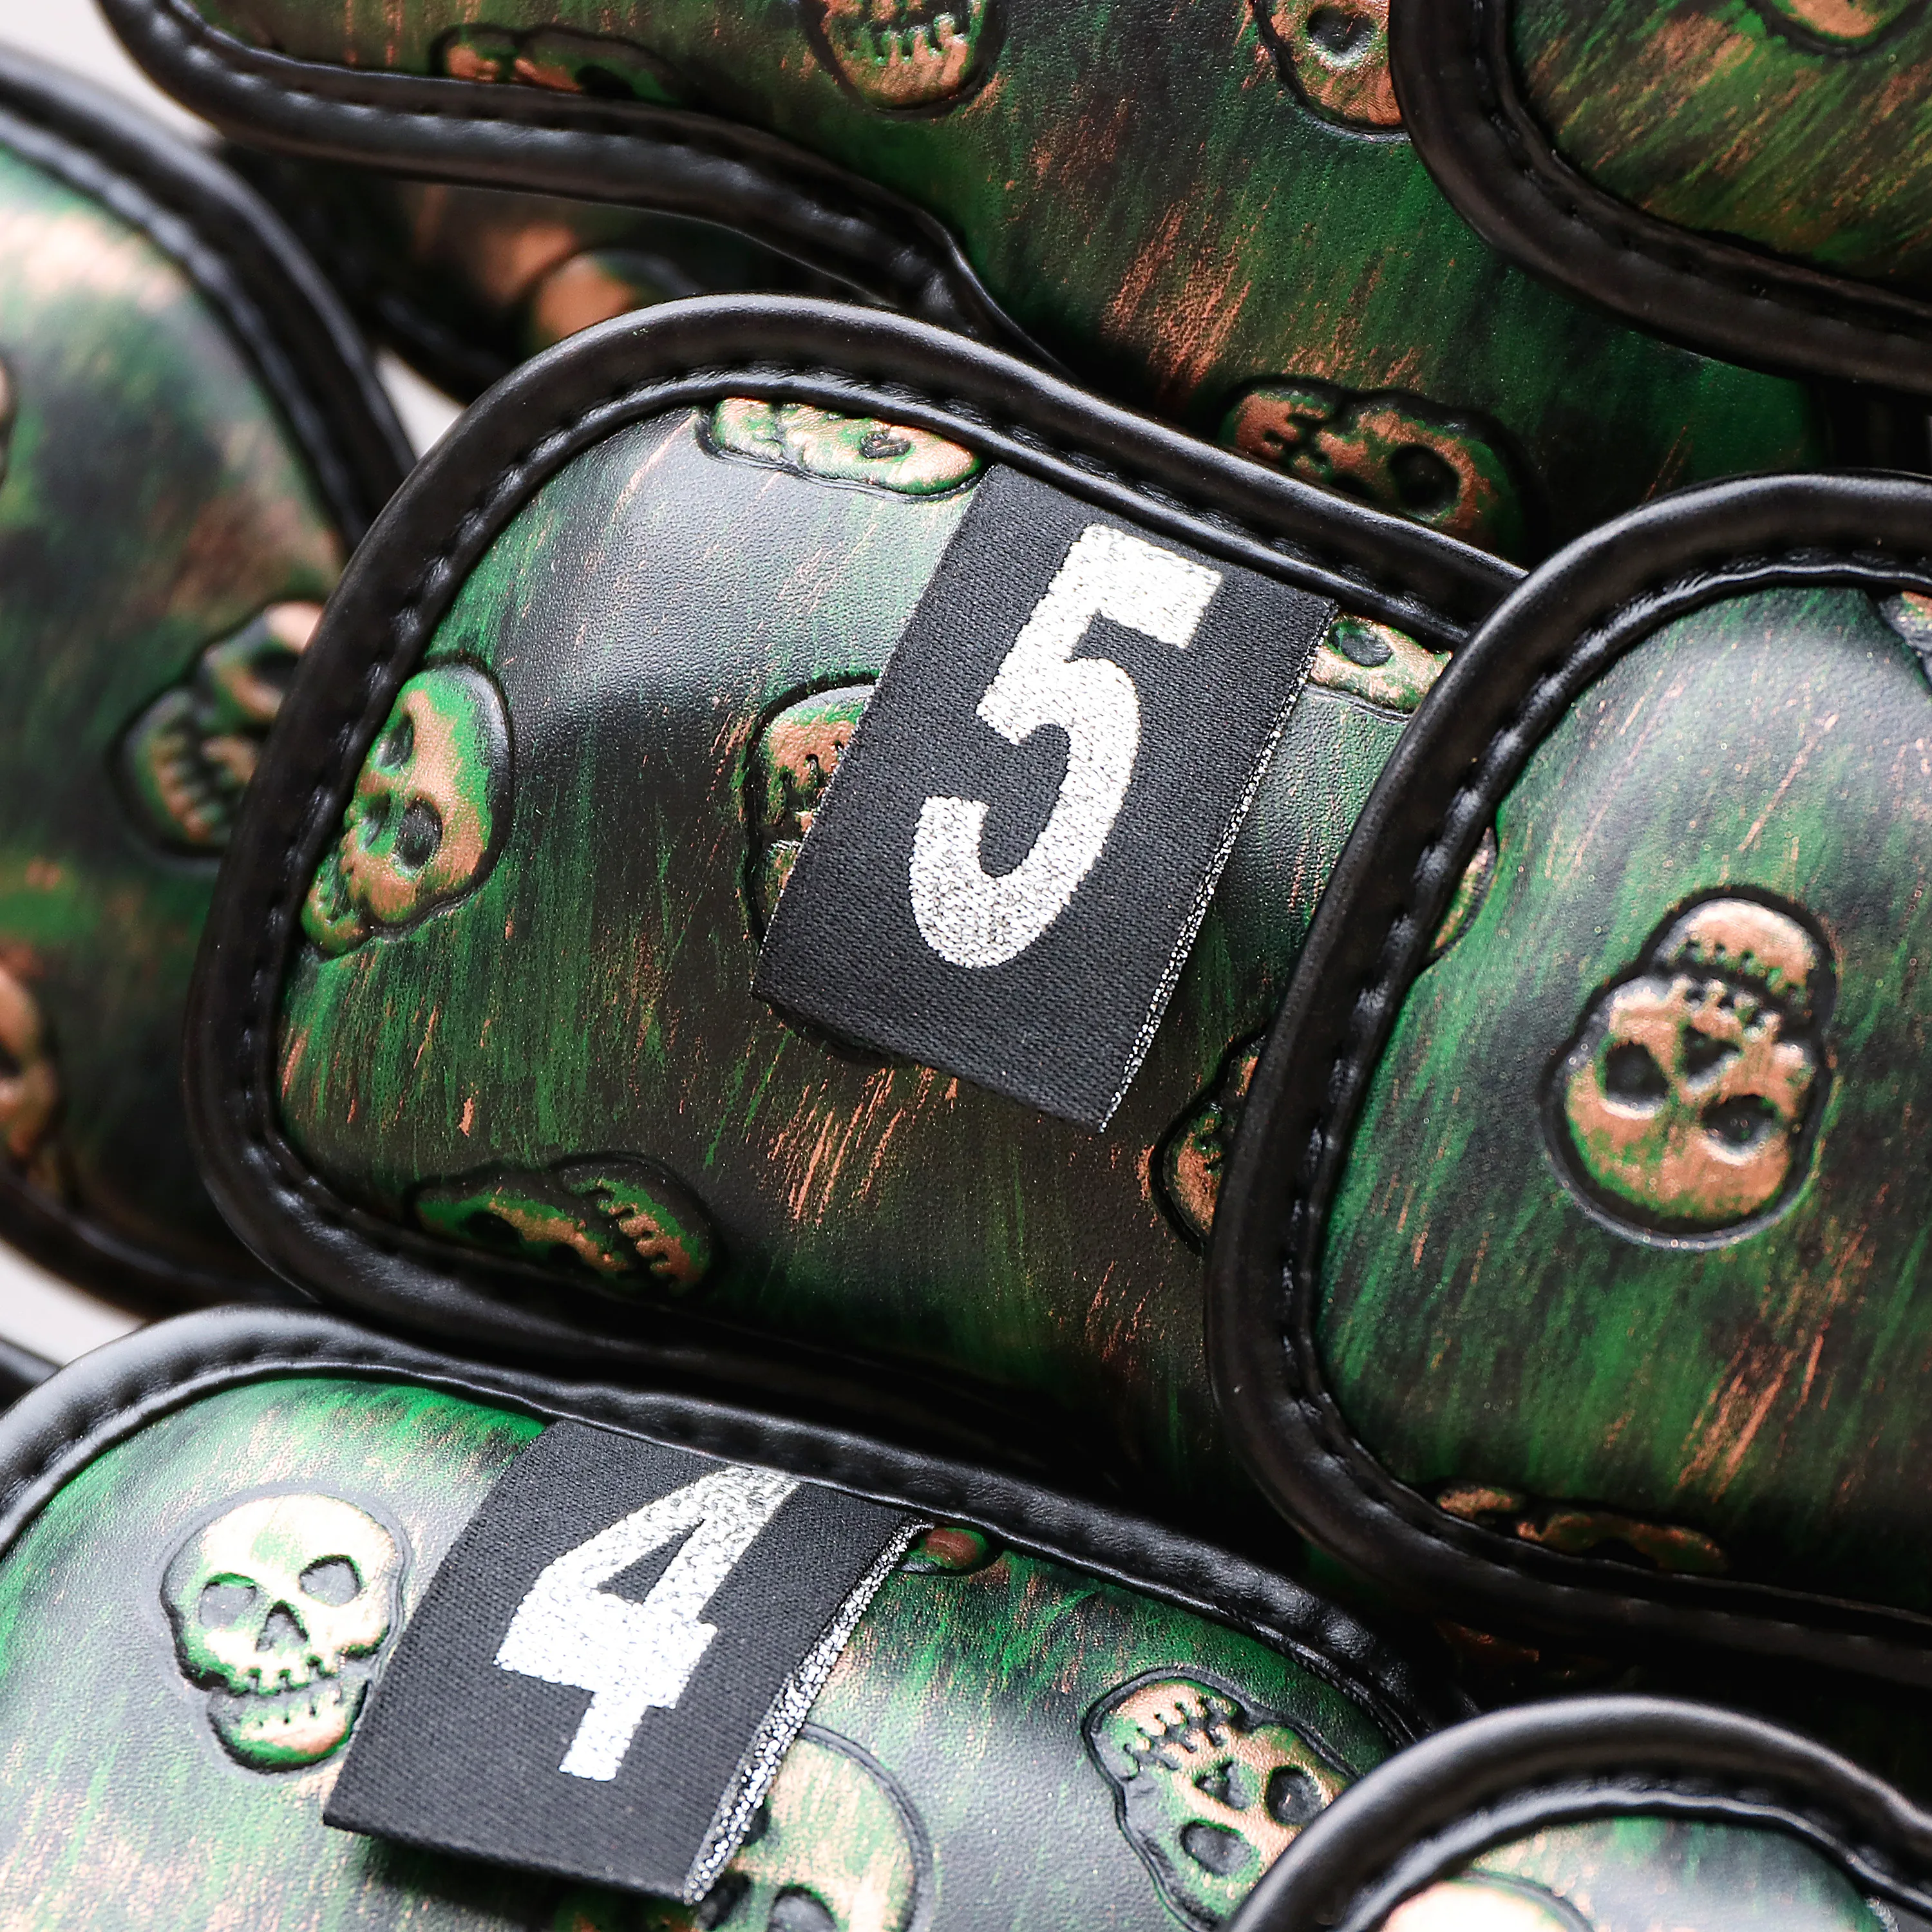 Чехол Champkey Monster Skull Golf с железной головкой из 12 шт.(3~ 9, A, P, S, L, L)-черный зеленый цвет чехол для головы Golf Iron